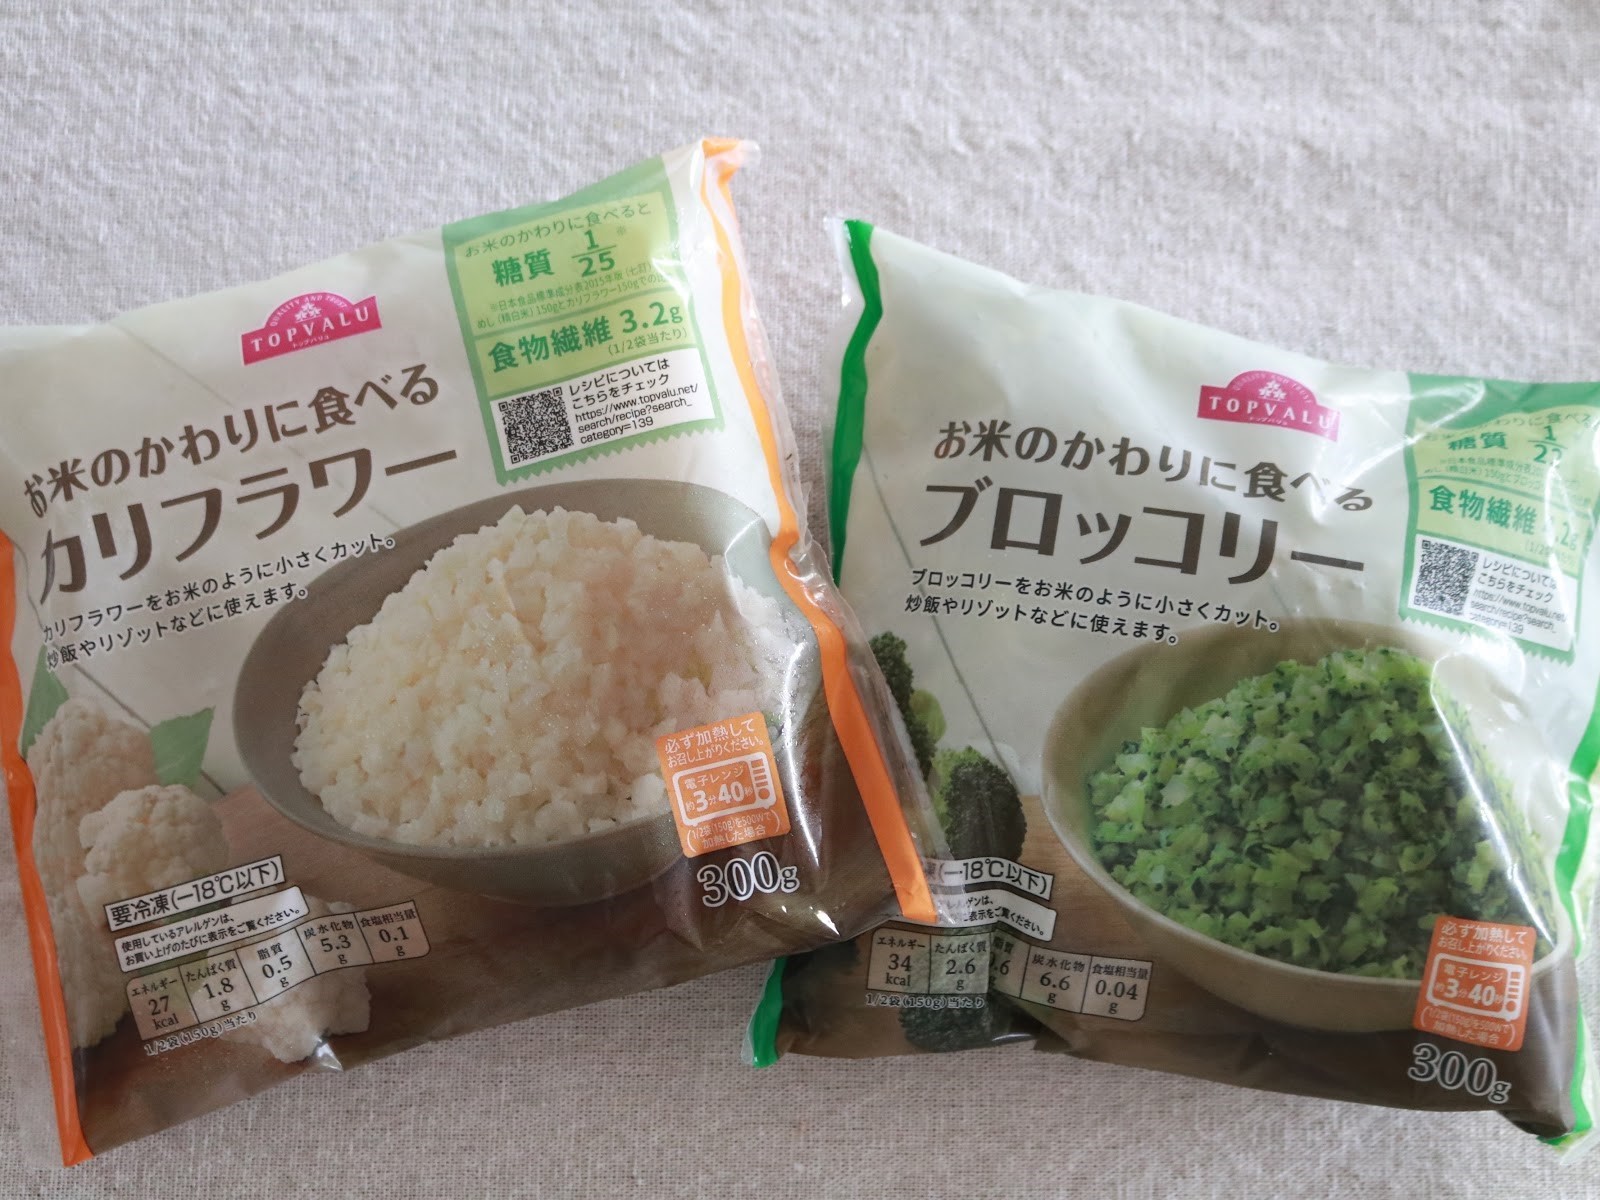 イオンPB「お米のかわりに食べる」で糖質制限--本当に違和感ない? 実食レポ付き